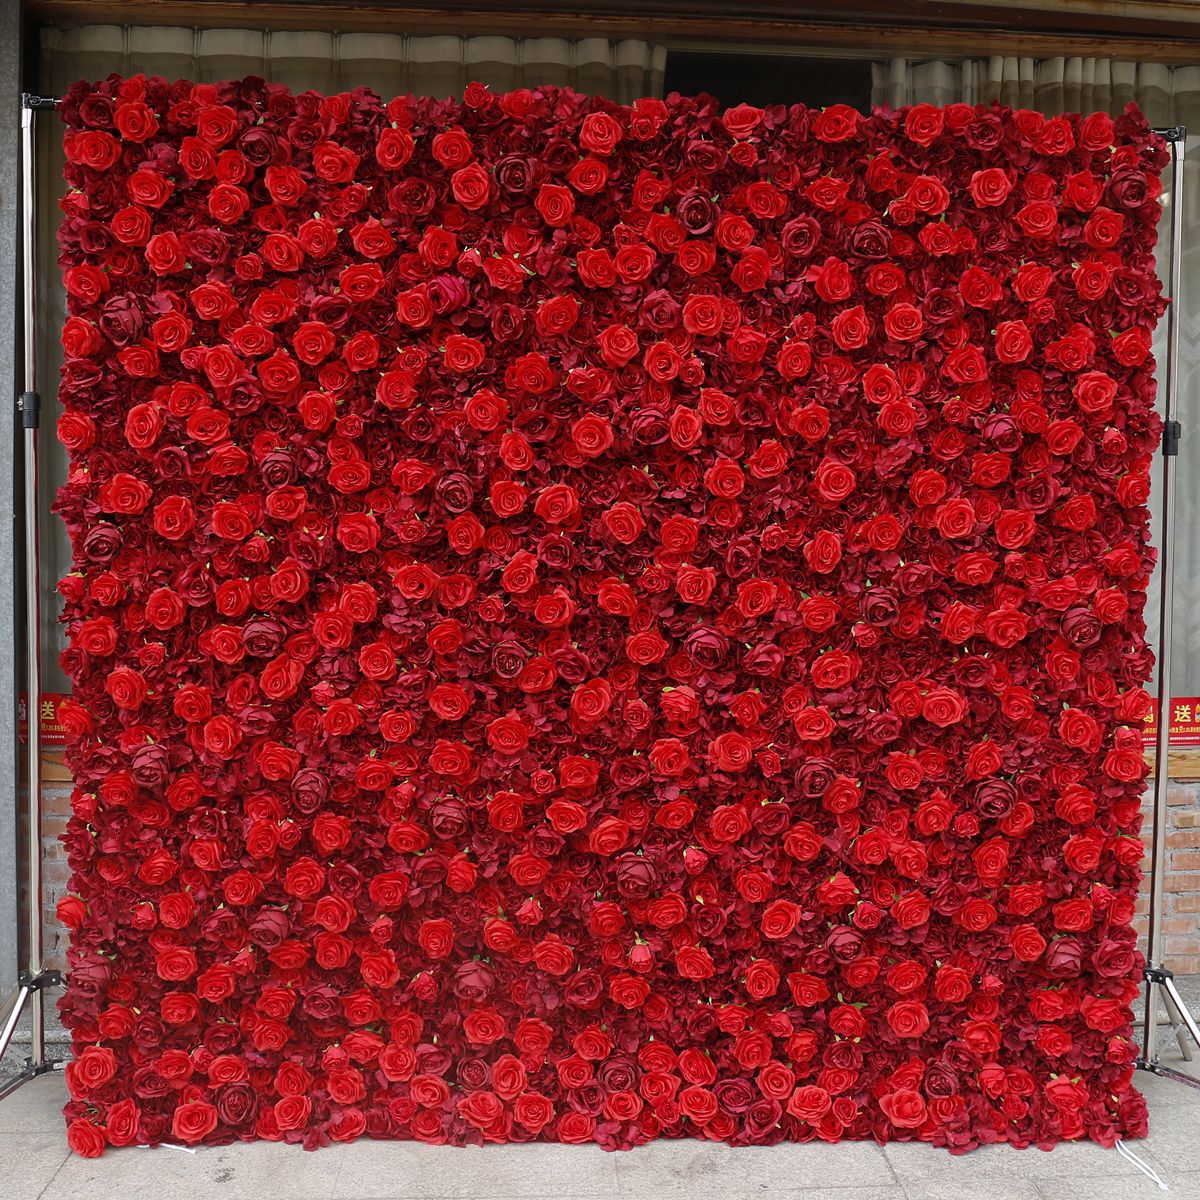 Reade doek boaiem blom muorre eftergrûn muorre fabrikant gruthannel brulloft dekoraasje stof simulaasje blommen